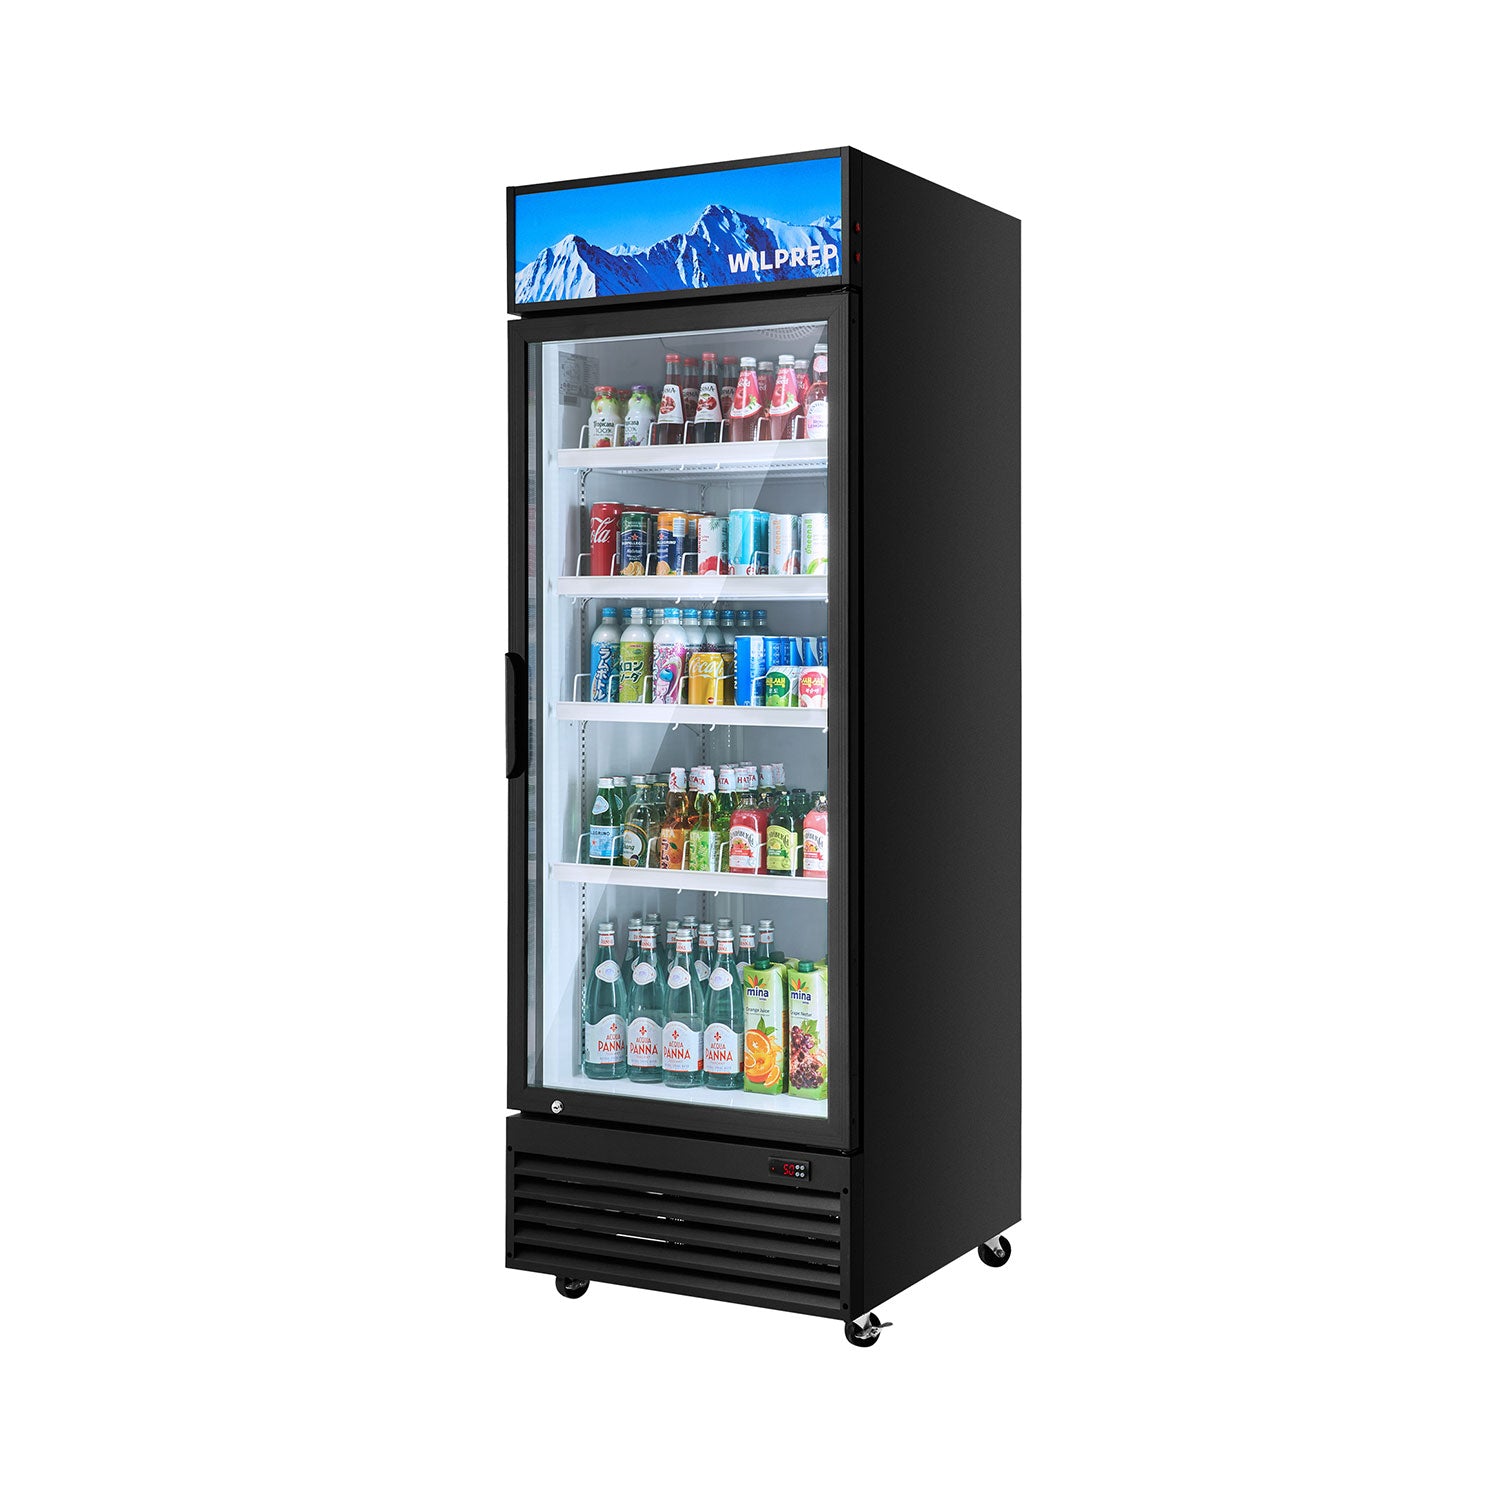 Wilprep 27.6 inch commercial glass door refrigerator